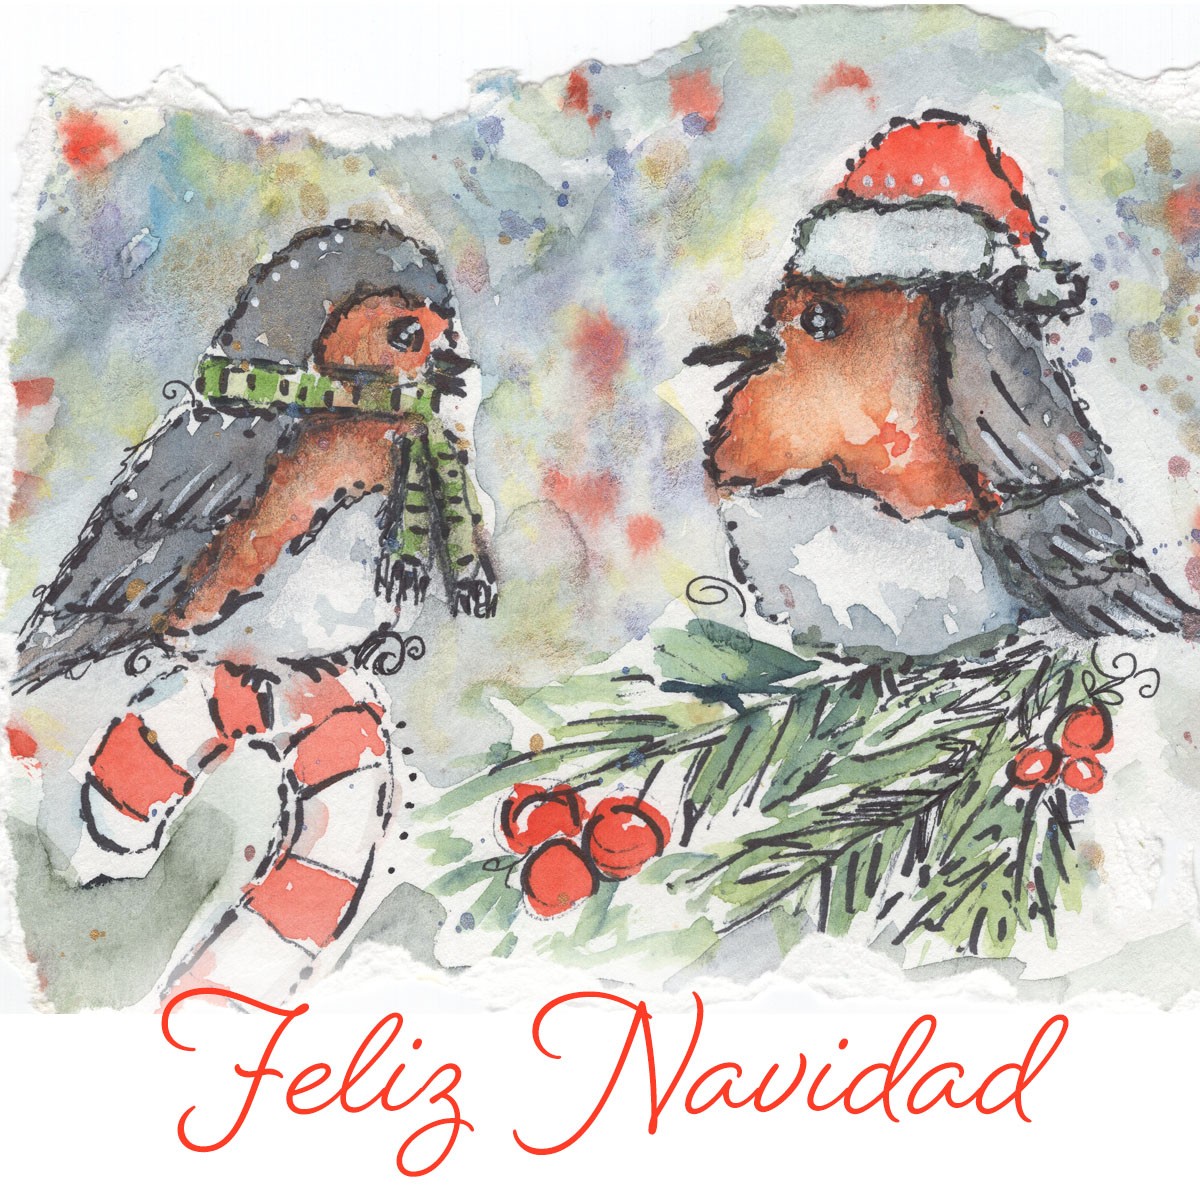 Dibujo de dos pájaros luciendo ropa con tema navideño, posados sobre un árbol decorado con ornamentos y dulces, con un mensaje que dice “Feliz Navidad”.